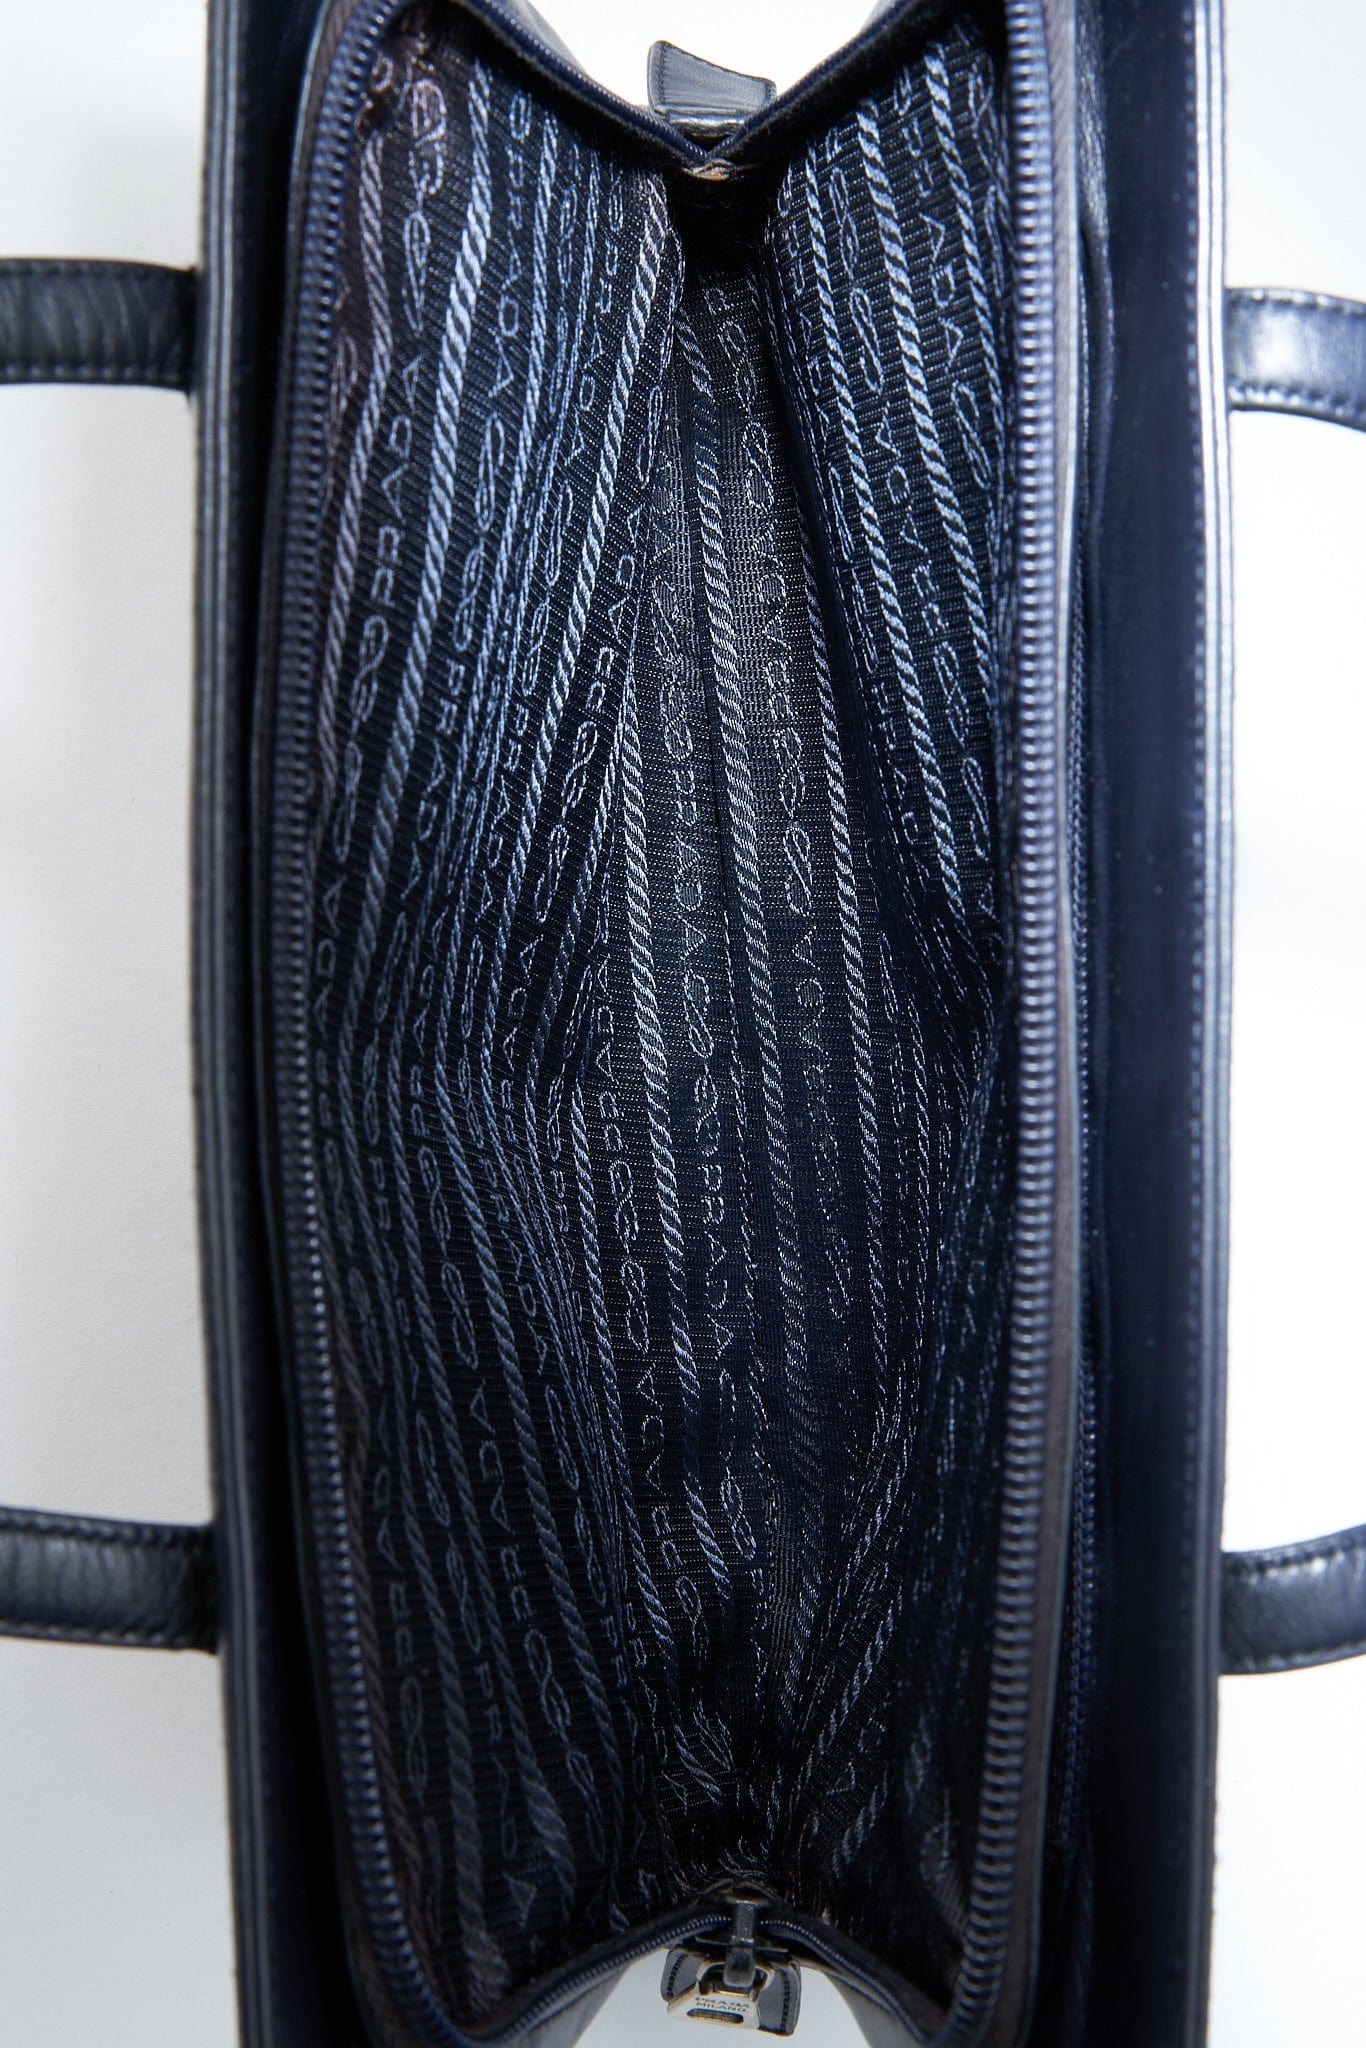 A vintage 90's Prada Navy Leather Shoulder Bag